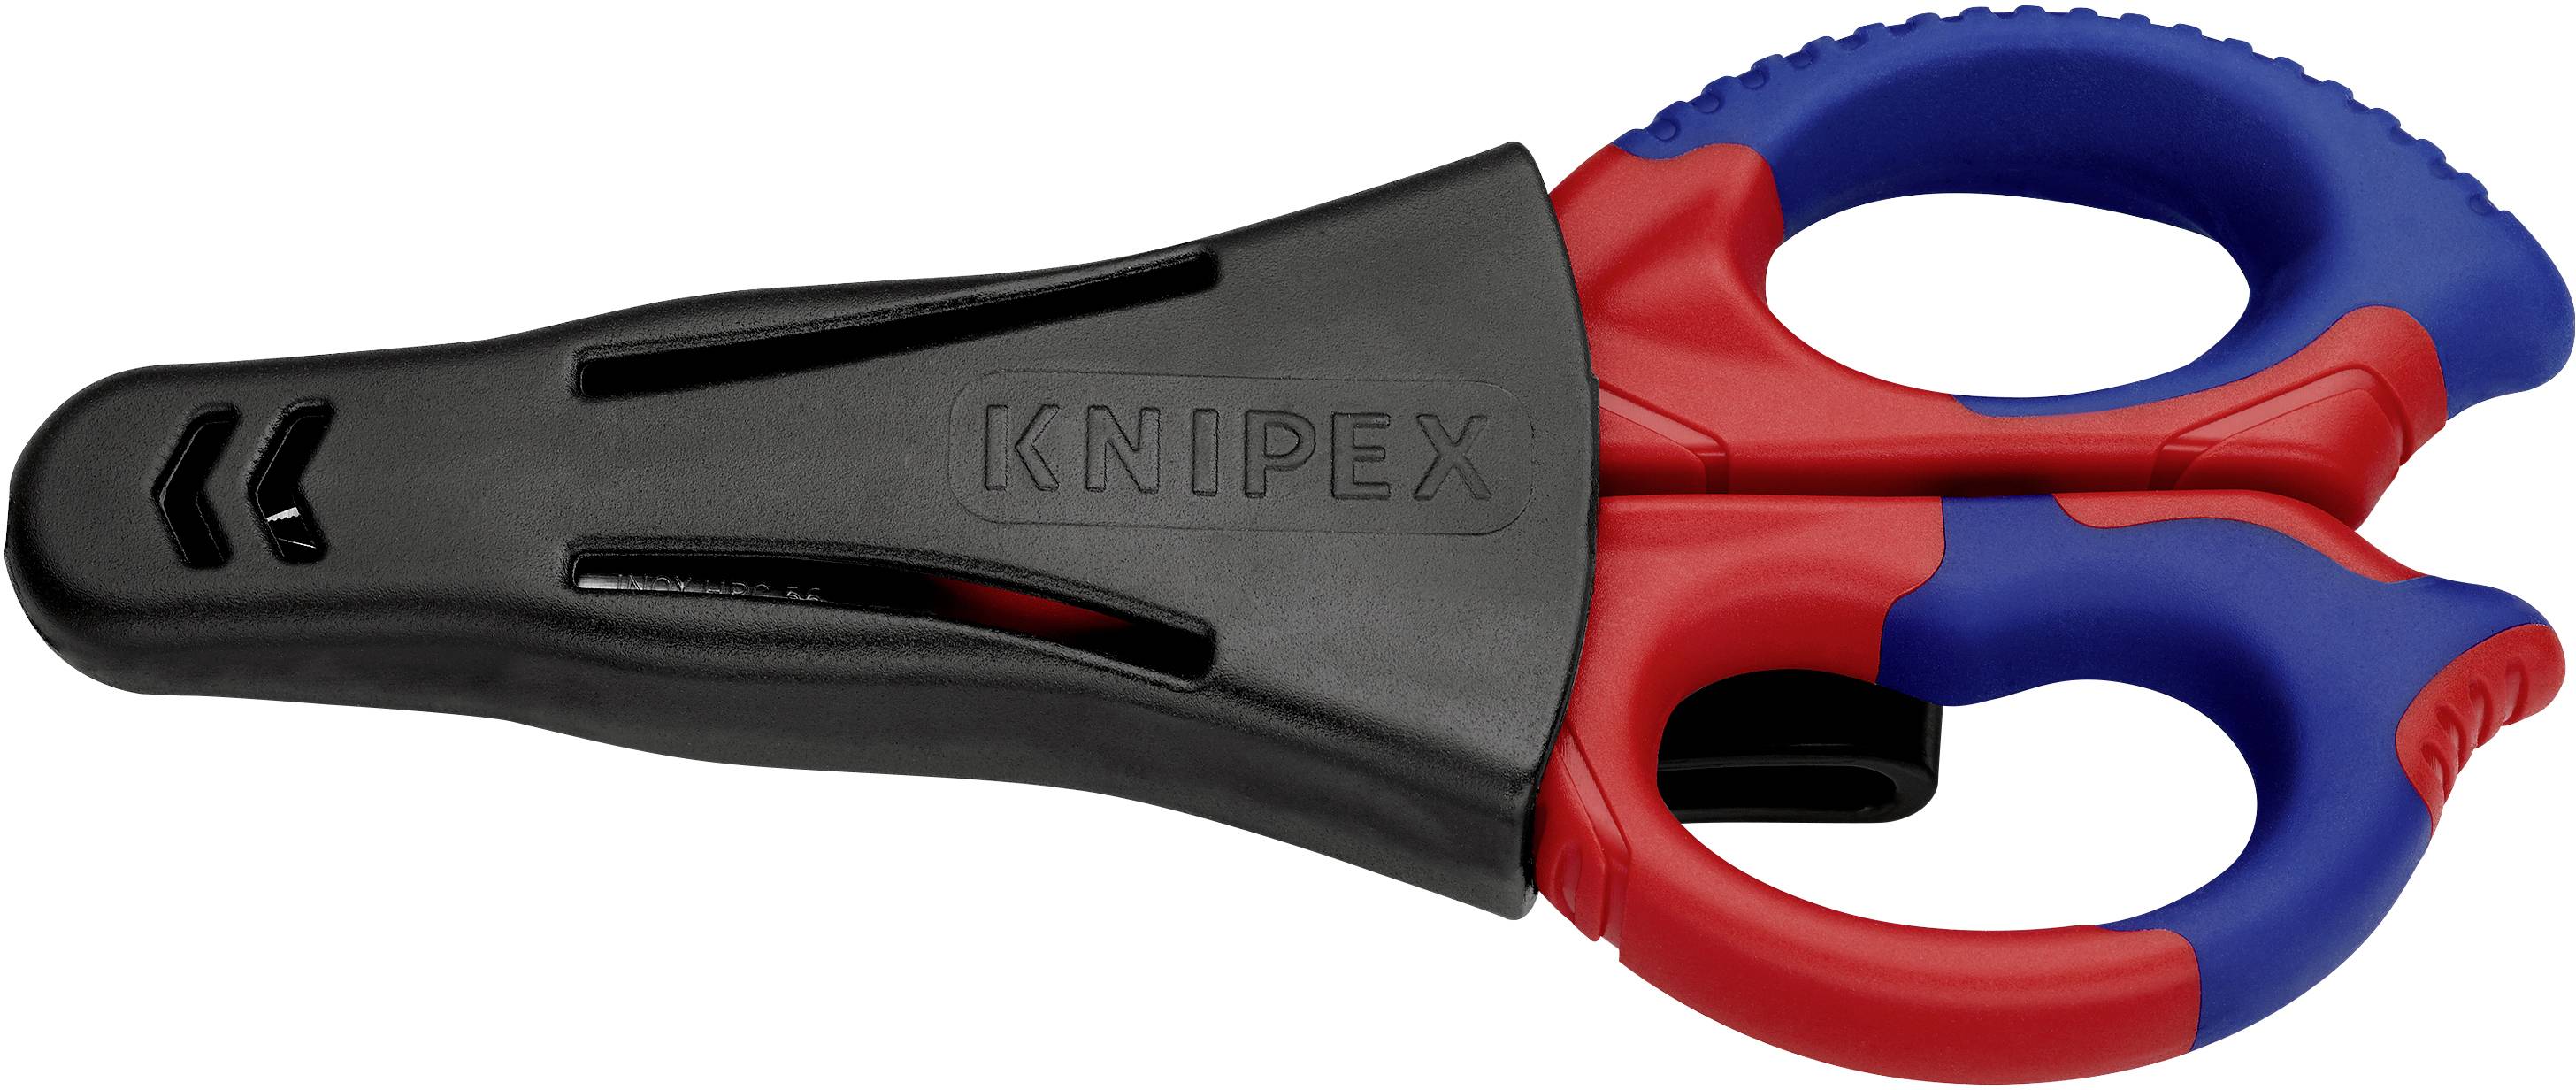 Knipex Elektrikerschere Model 95 05 155 Sb 